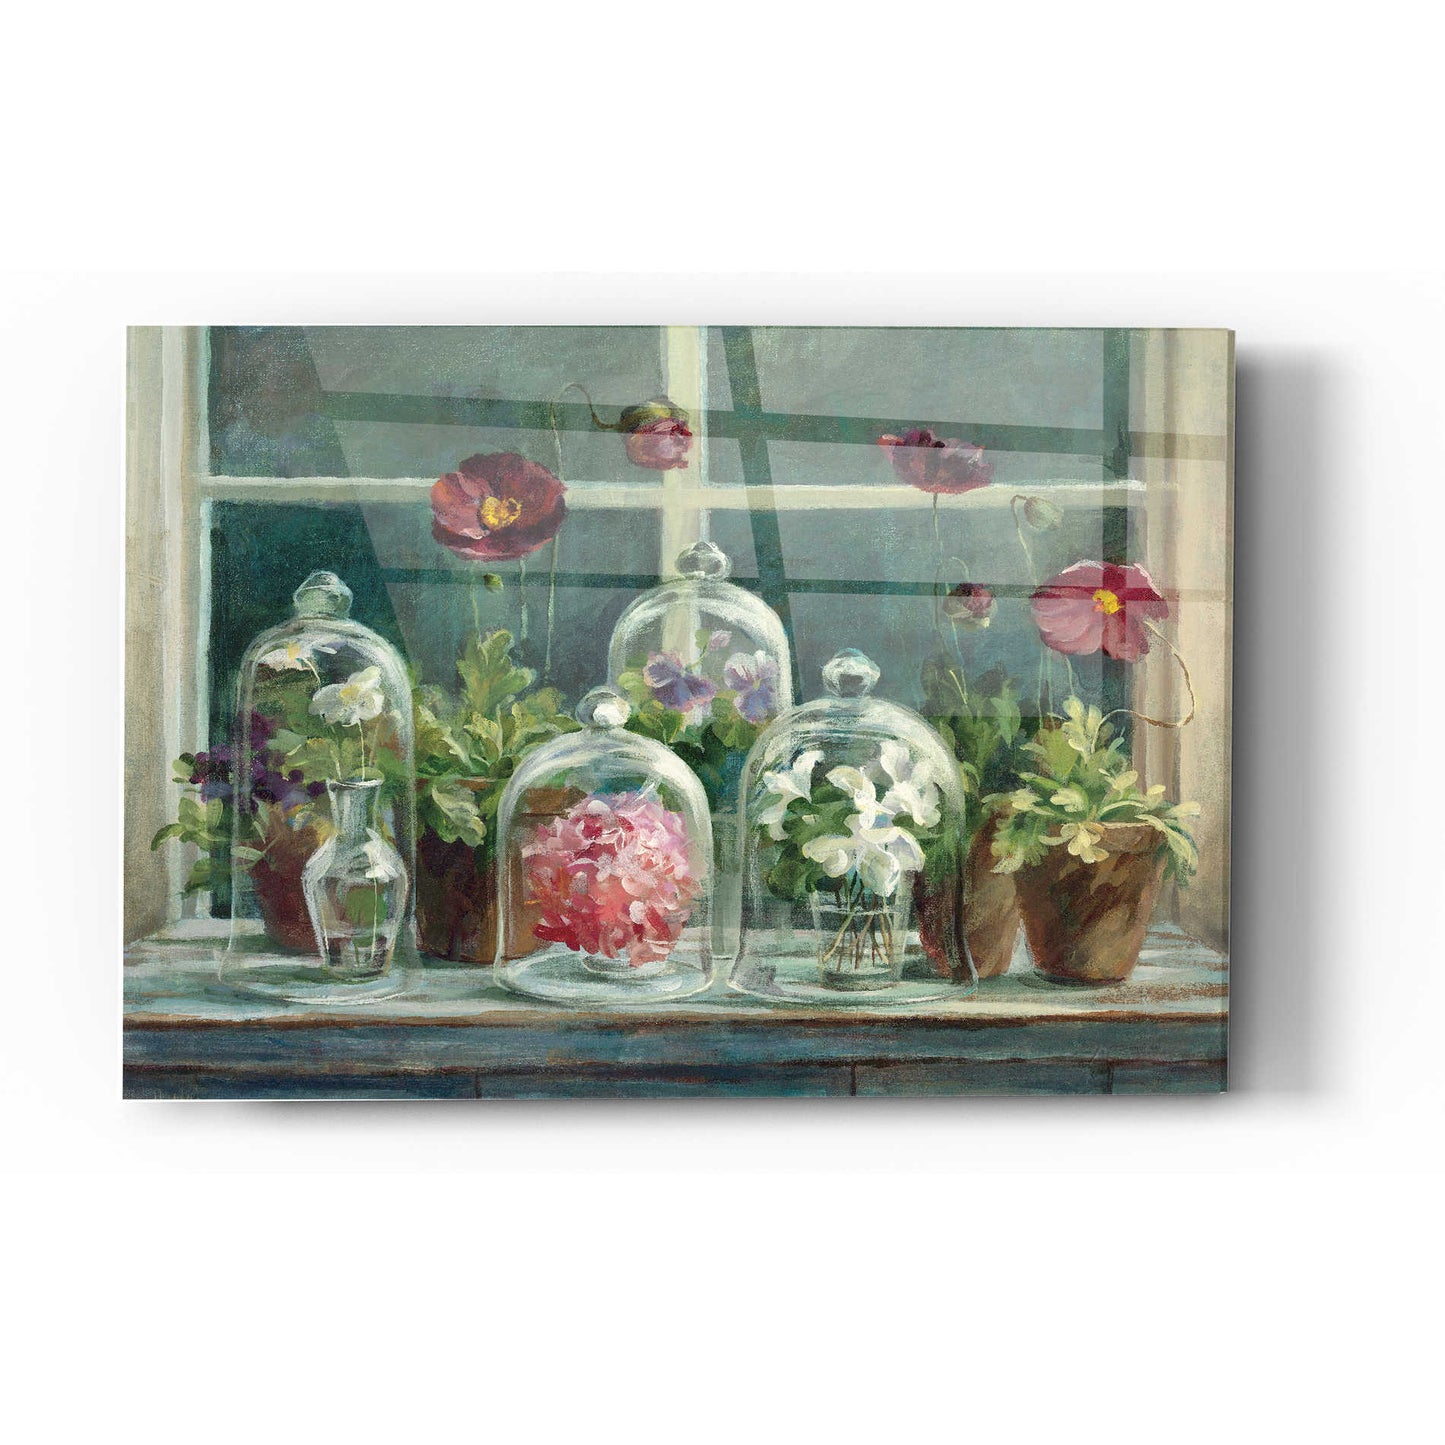 Epic Art 'Purple Poppies Windowsill Crop' by Danhui Nai, Acrylic Glass Wall Art,12 x 16